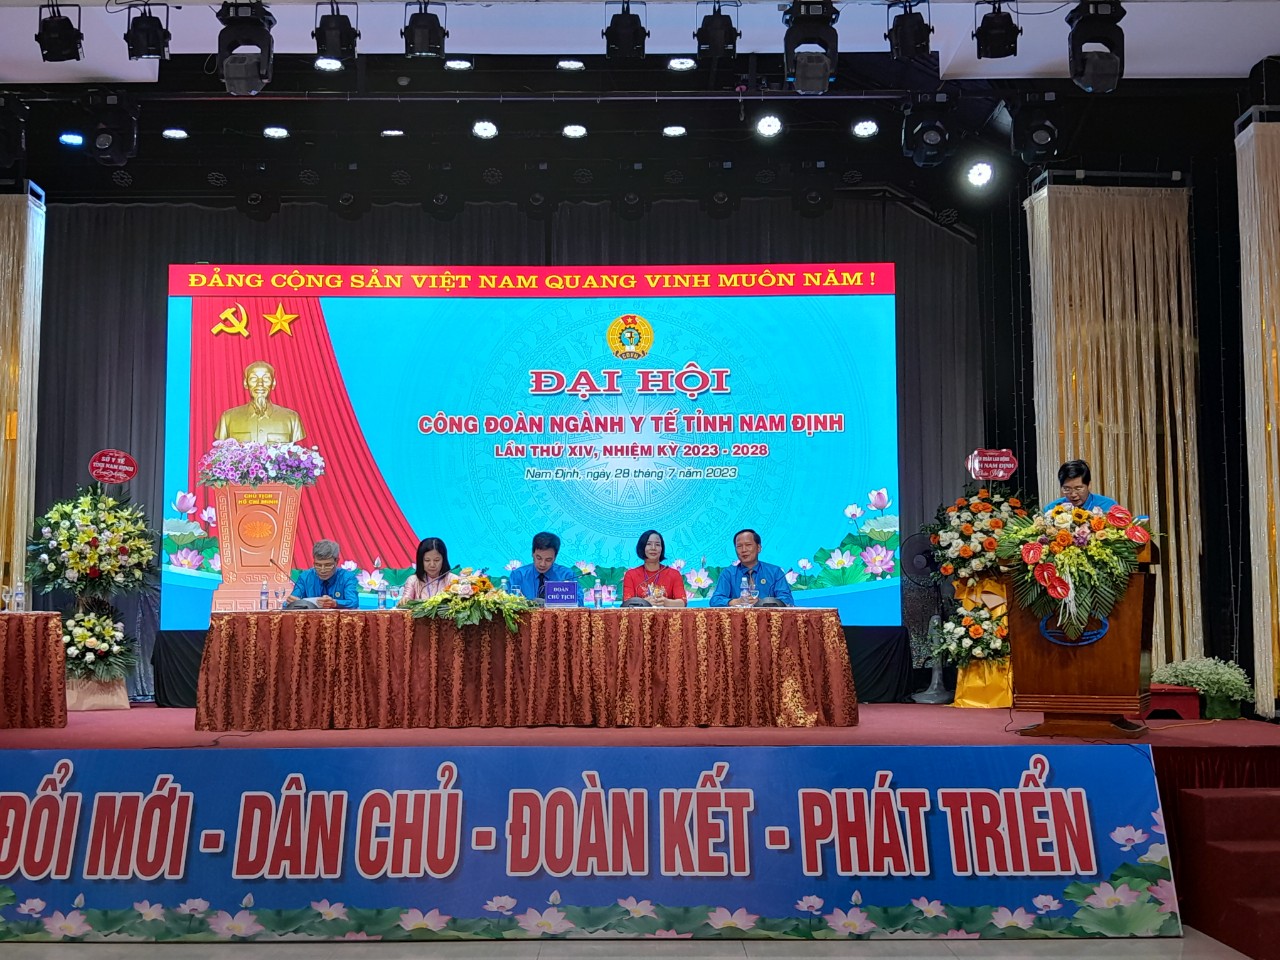 Dược Nam Hà tham dự Đại hội Công đoàn ngành Y tế tỉnh Nam Định